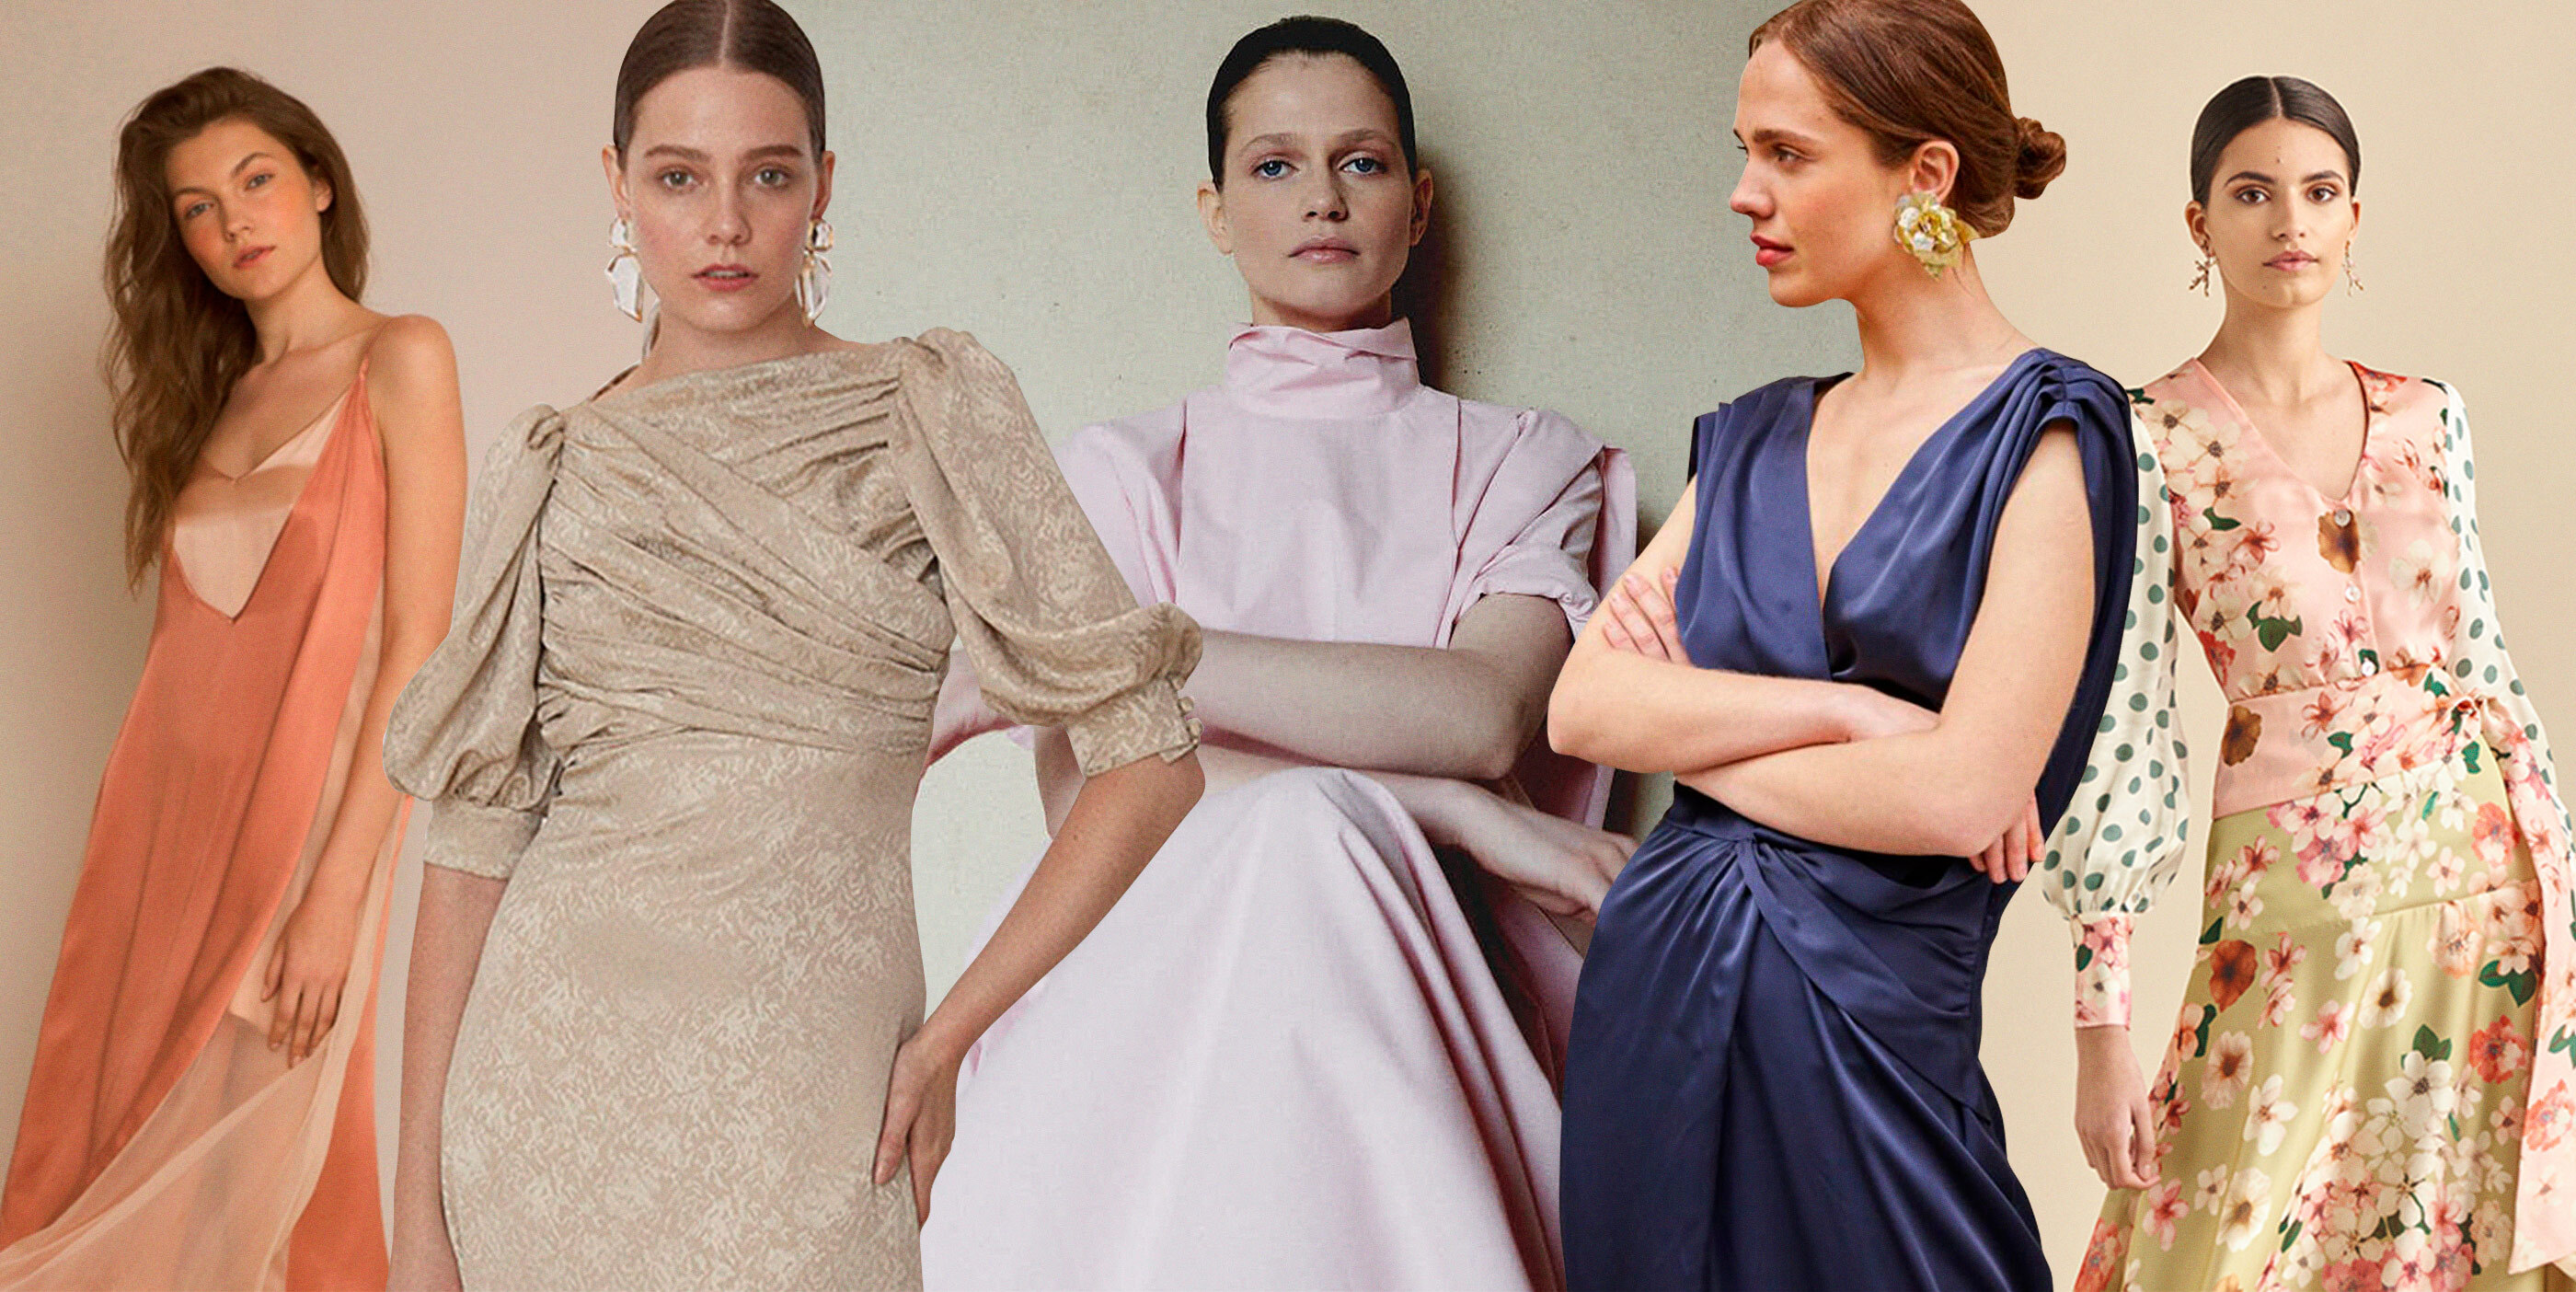 Oportuno vendaje A tientas 17 marcas españolas para invitadas que no quieren toparse con otro vestido  igual que el suyo | Moda, Shopping | S Moda EL PAÍS